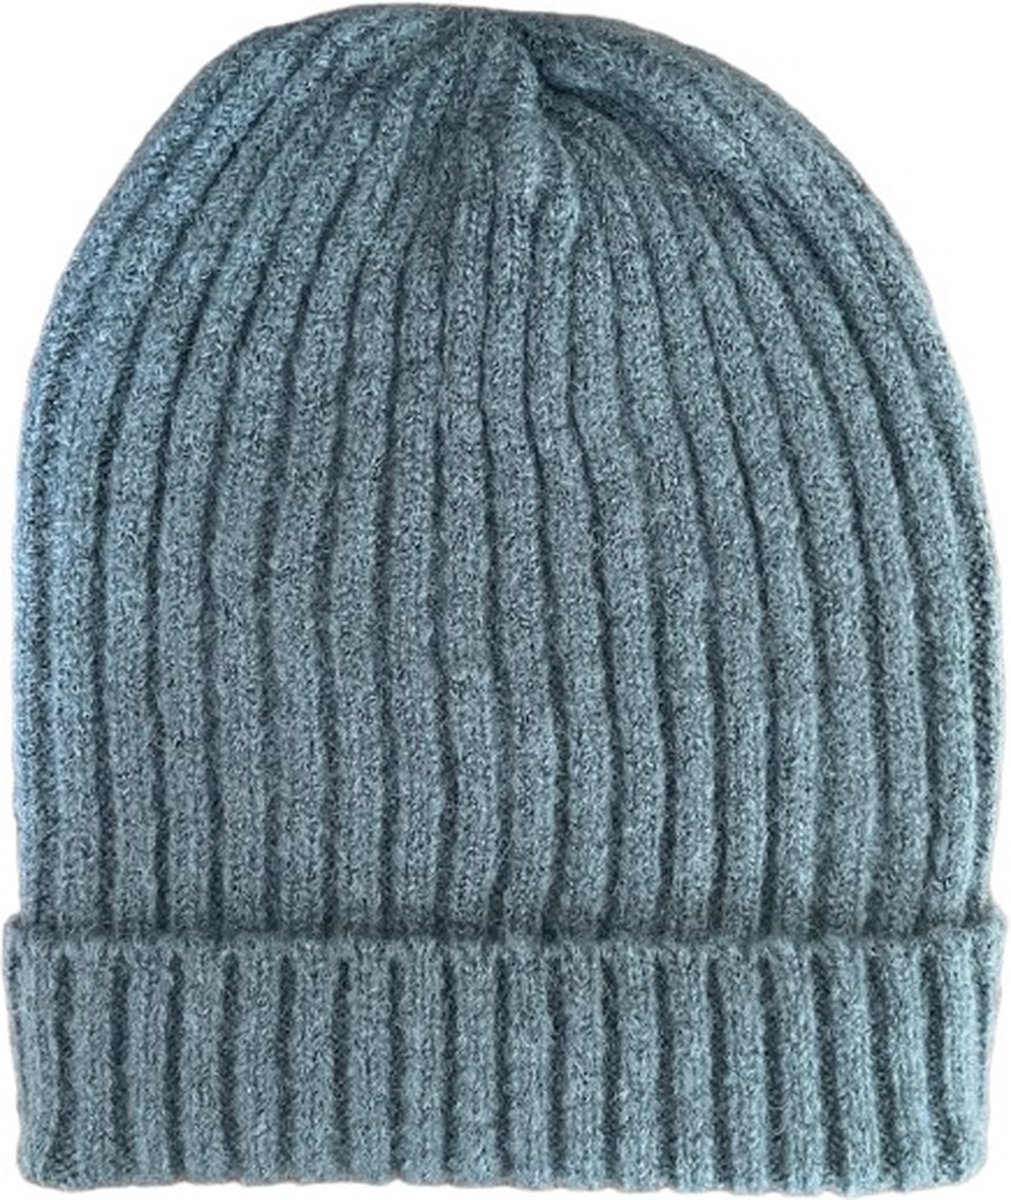 ASTRADAVI Beanie Hats - Muts - Warme Skimutsen Hoofddeksels - Trendy Winter Mutsen - Donker Grijs